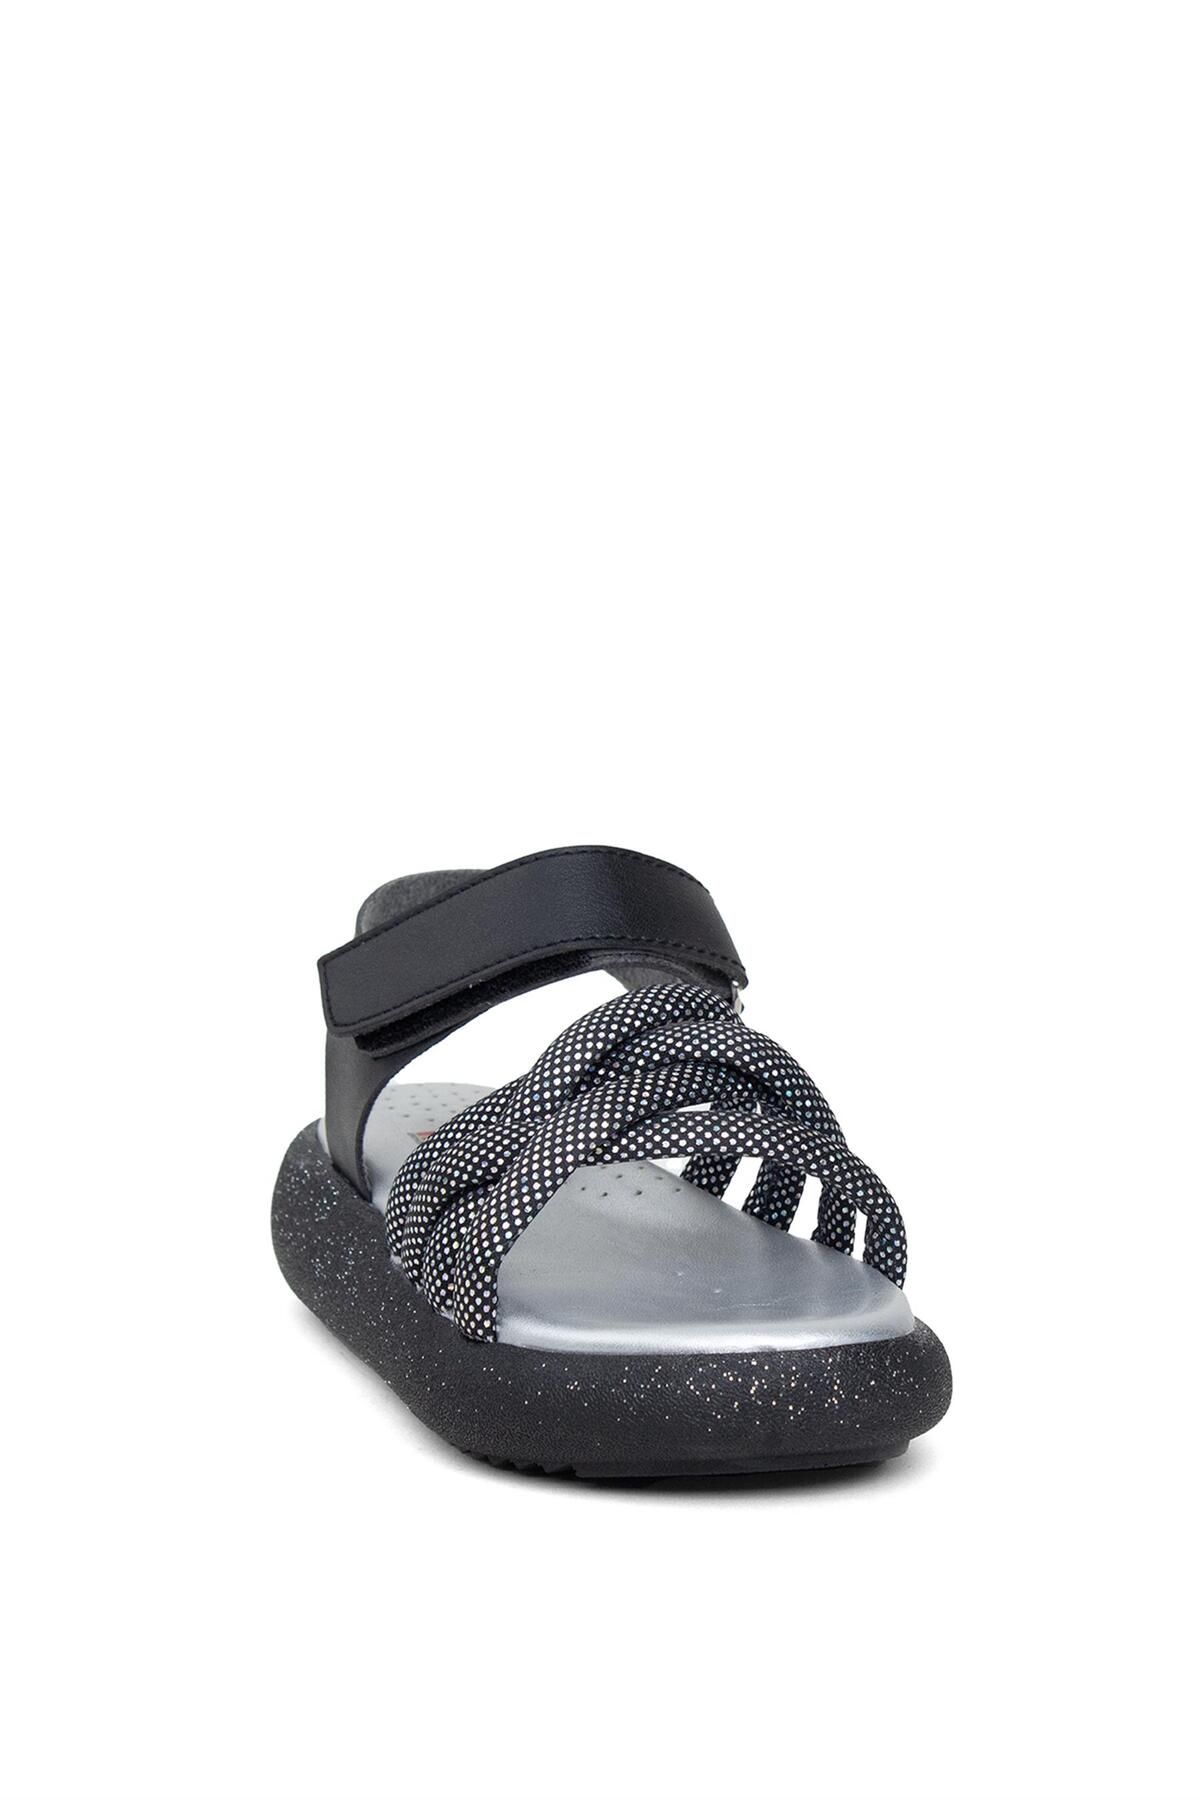 Minican ŞA P 006 Patik Kız Çocuk Düz Sandalet Siyah